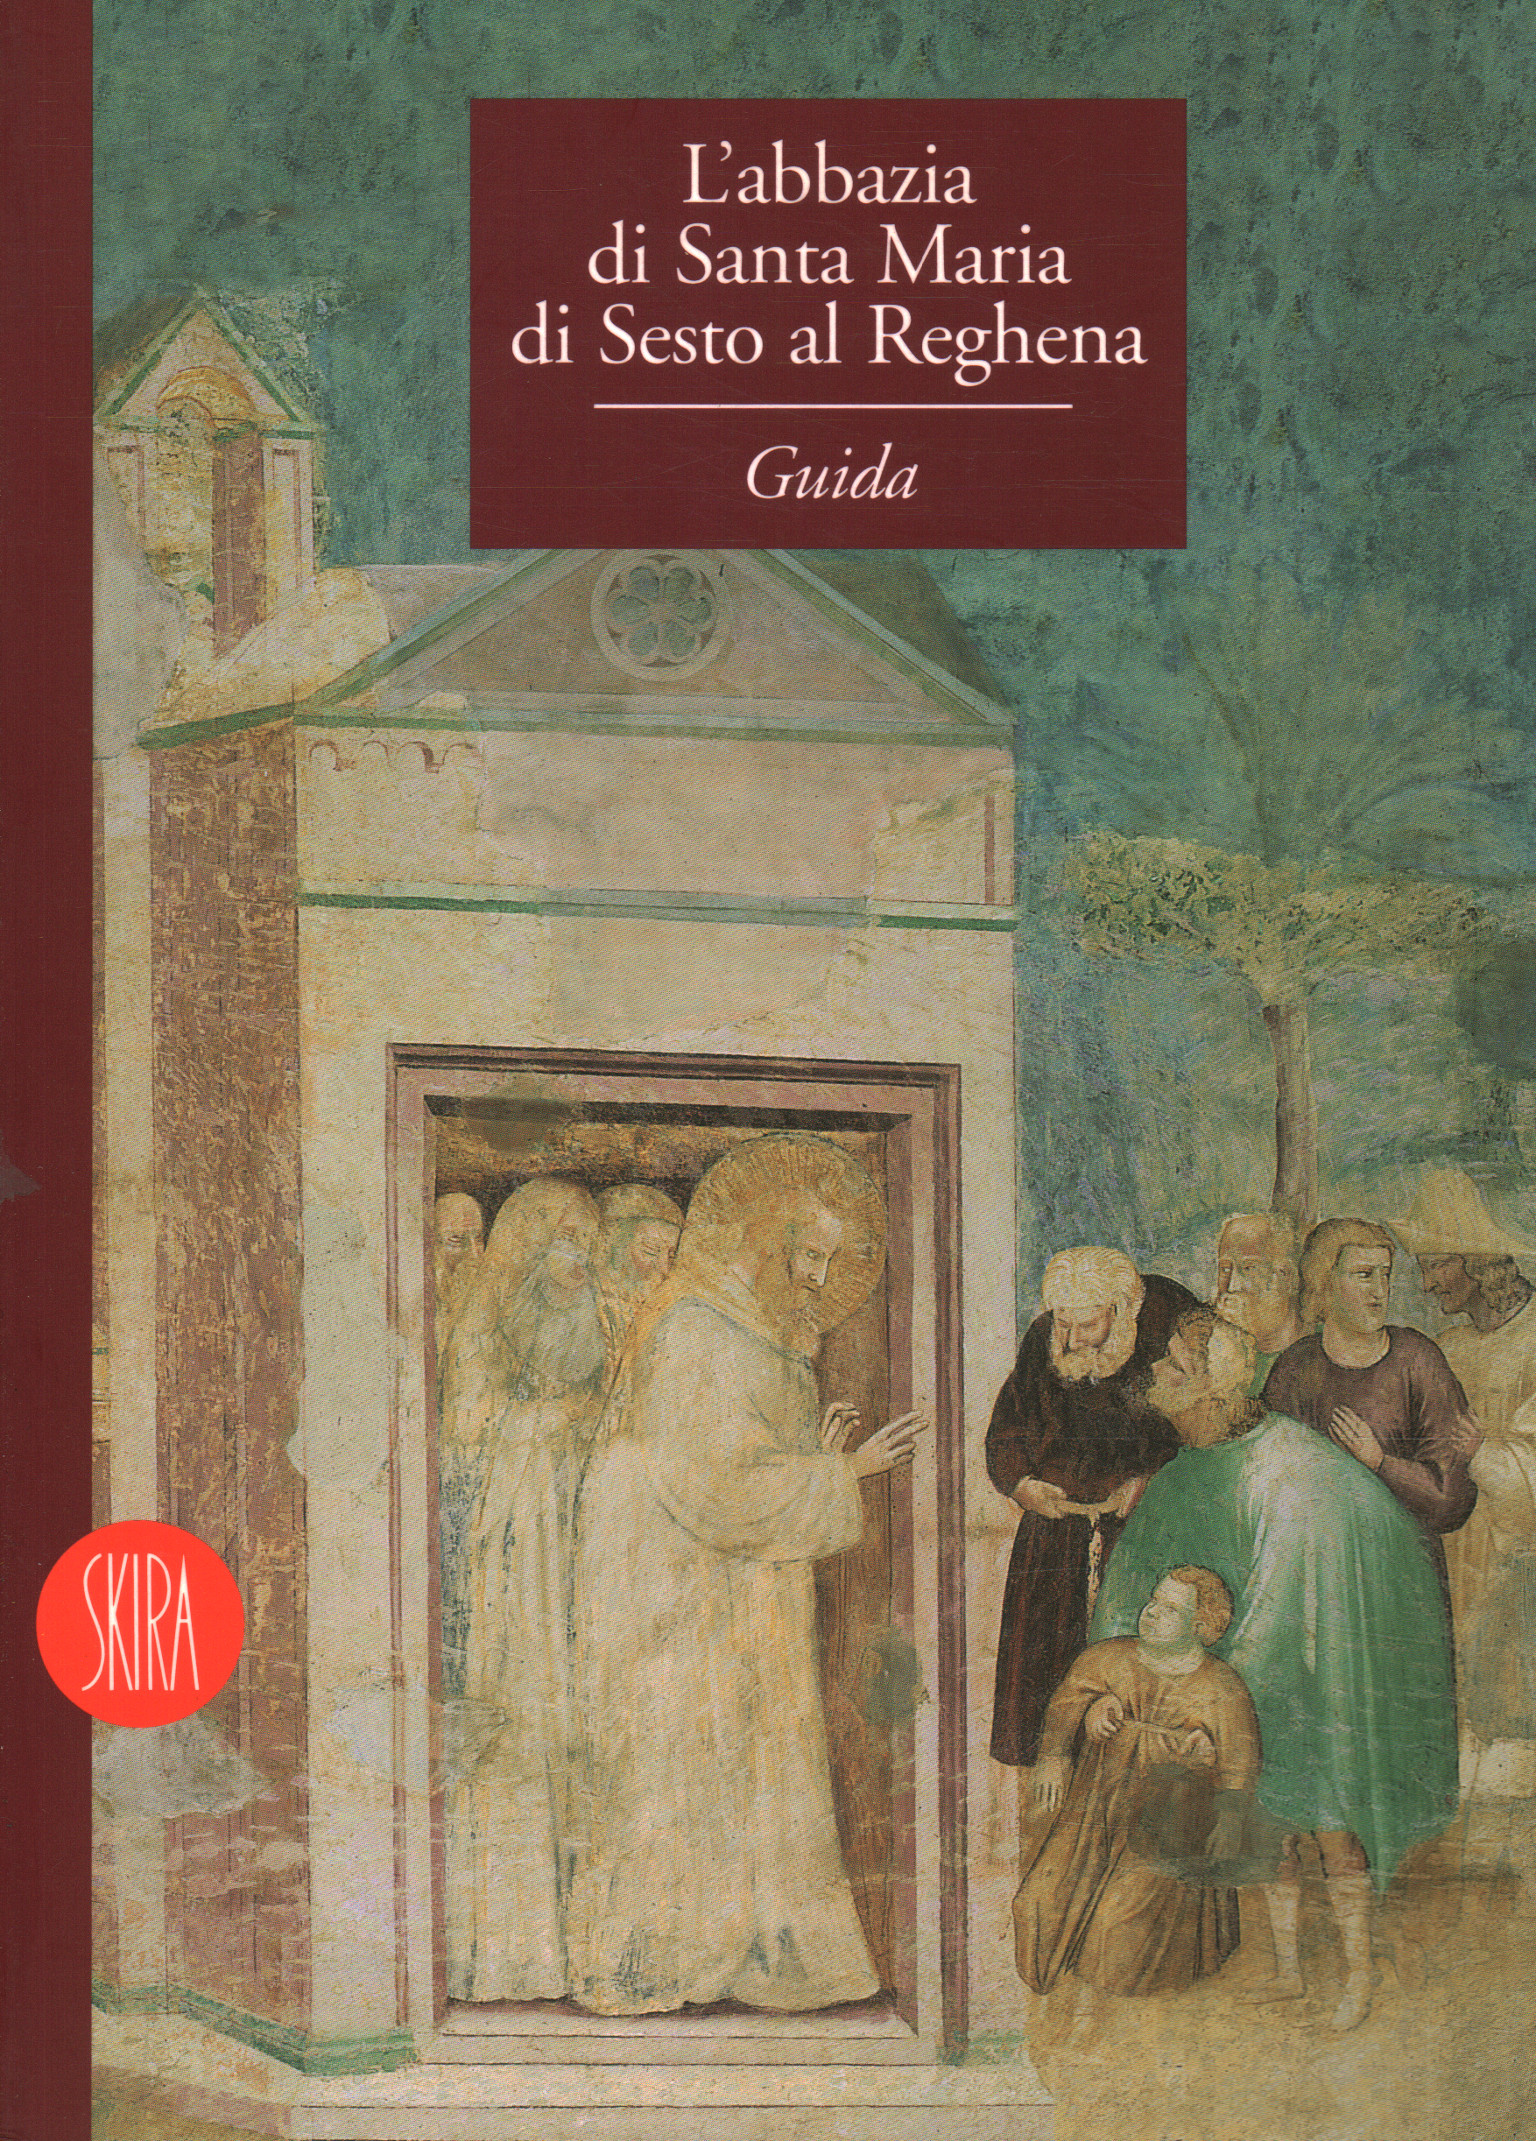 Die Abtei Santa Maria di Sesto al Raghera, Umberto Trame